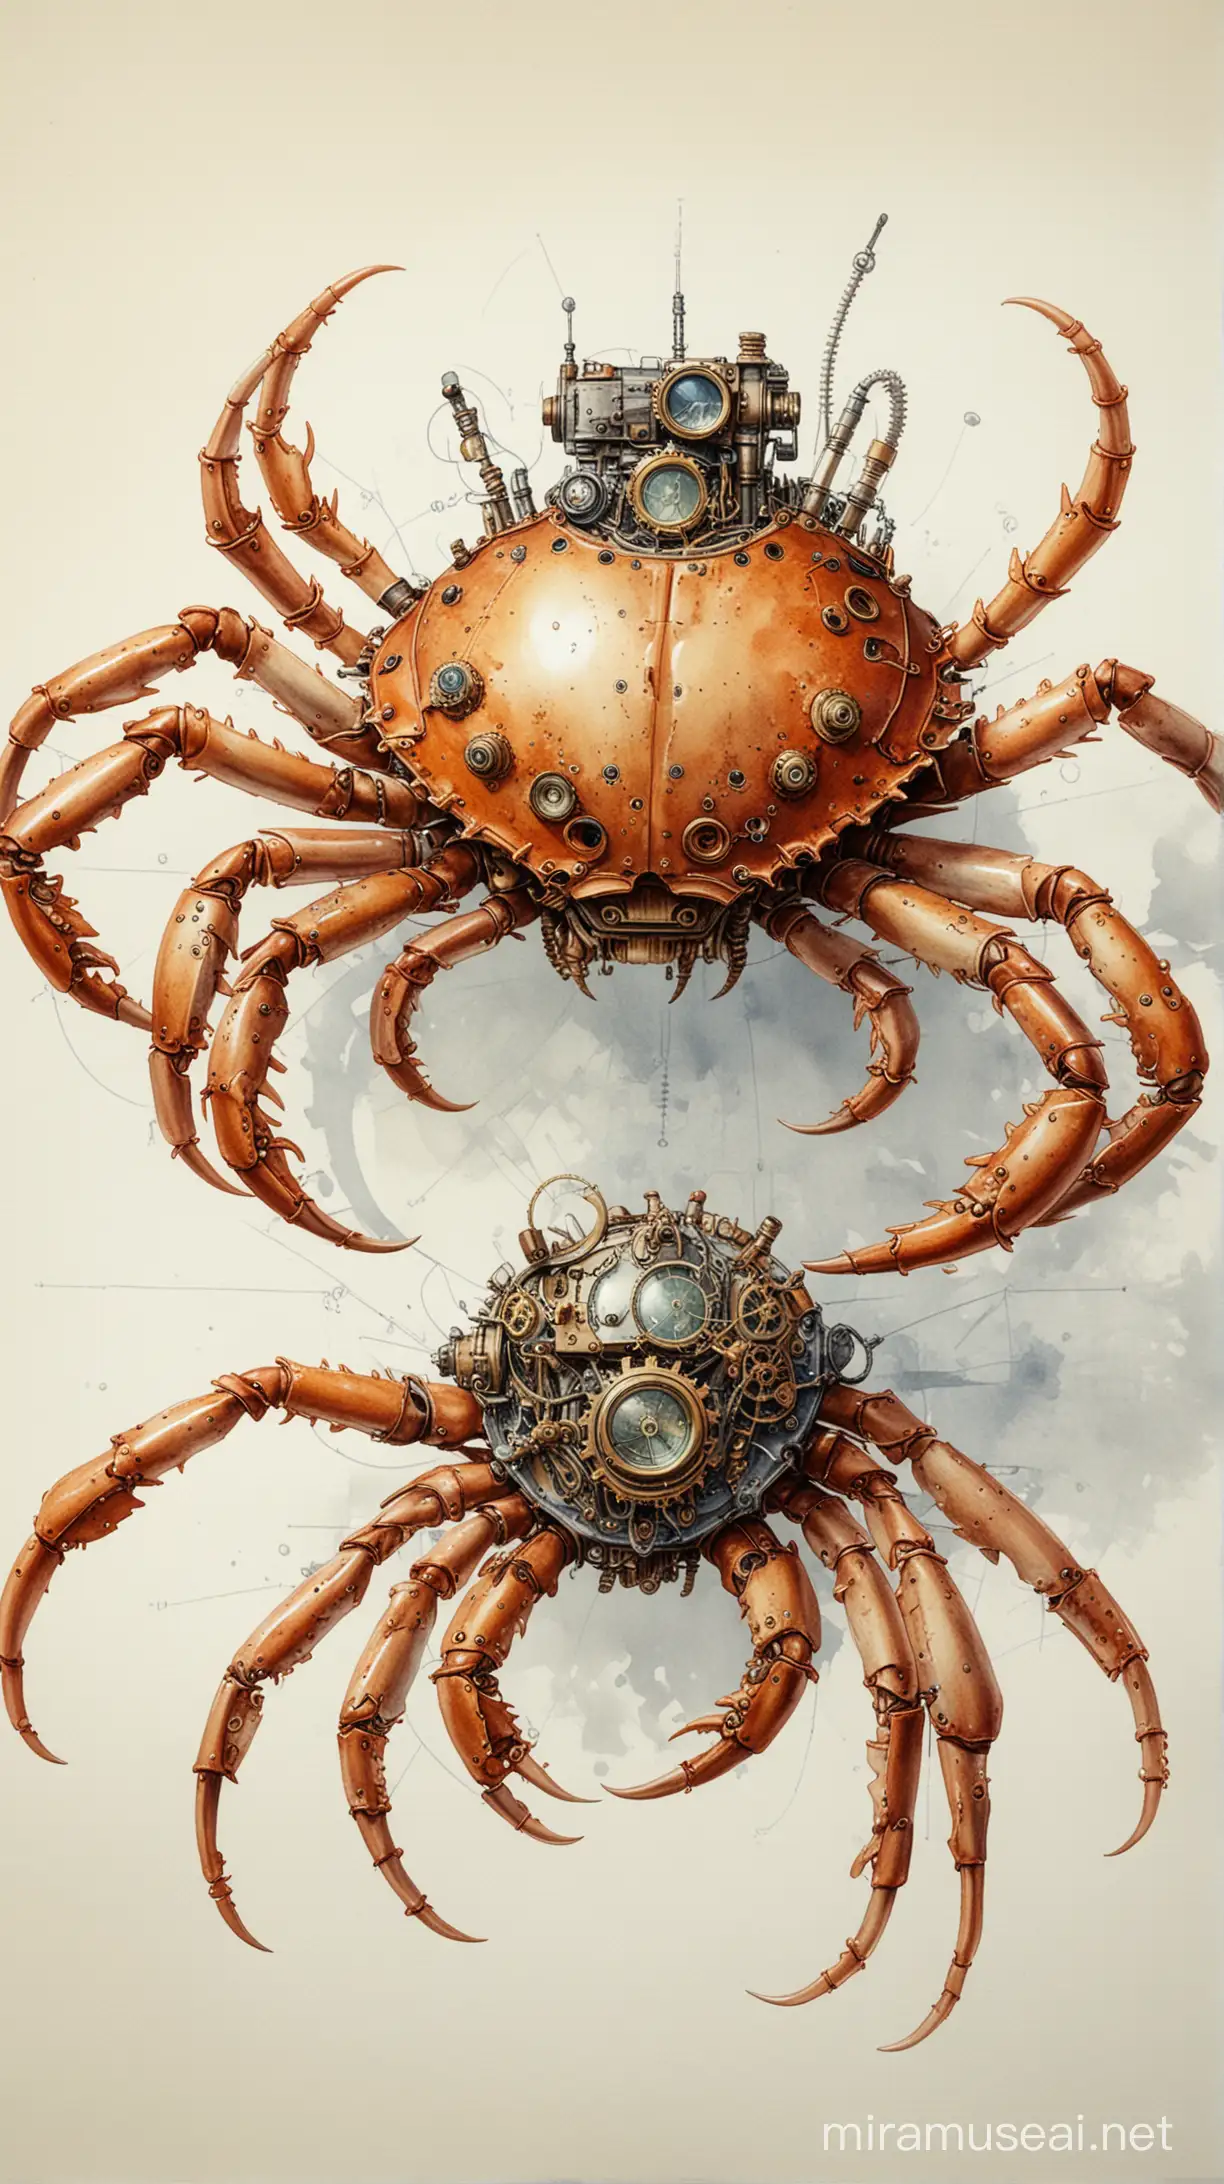 Imagine un dessin technique précis crabe steampunk, avec tous les détails anatomiques soigneusement rendus; aquarelle